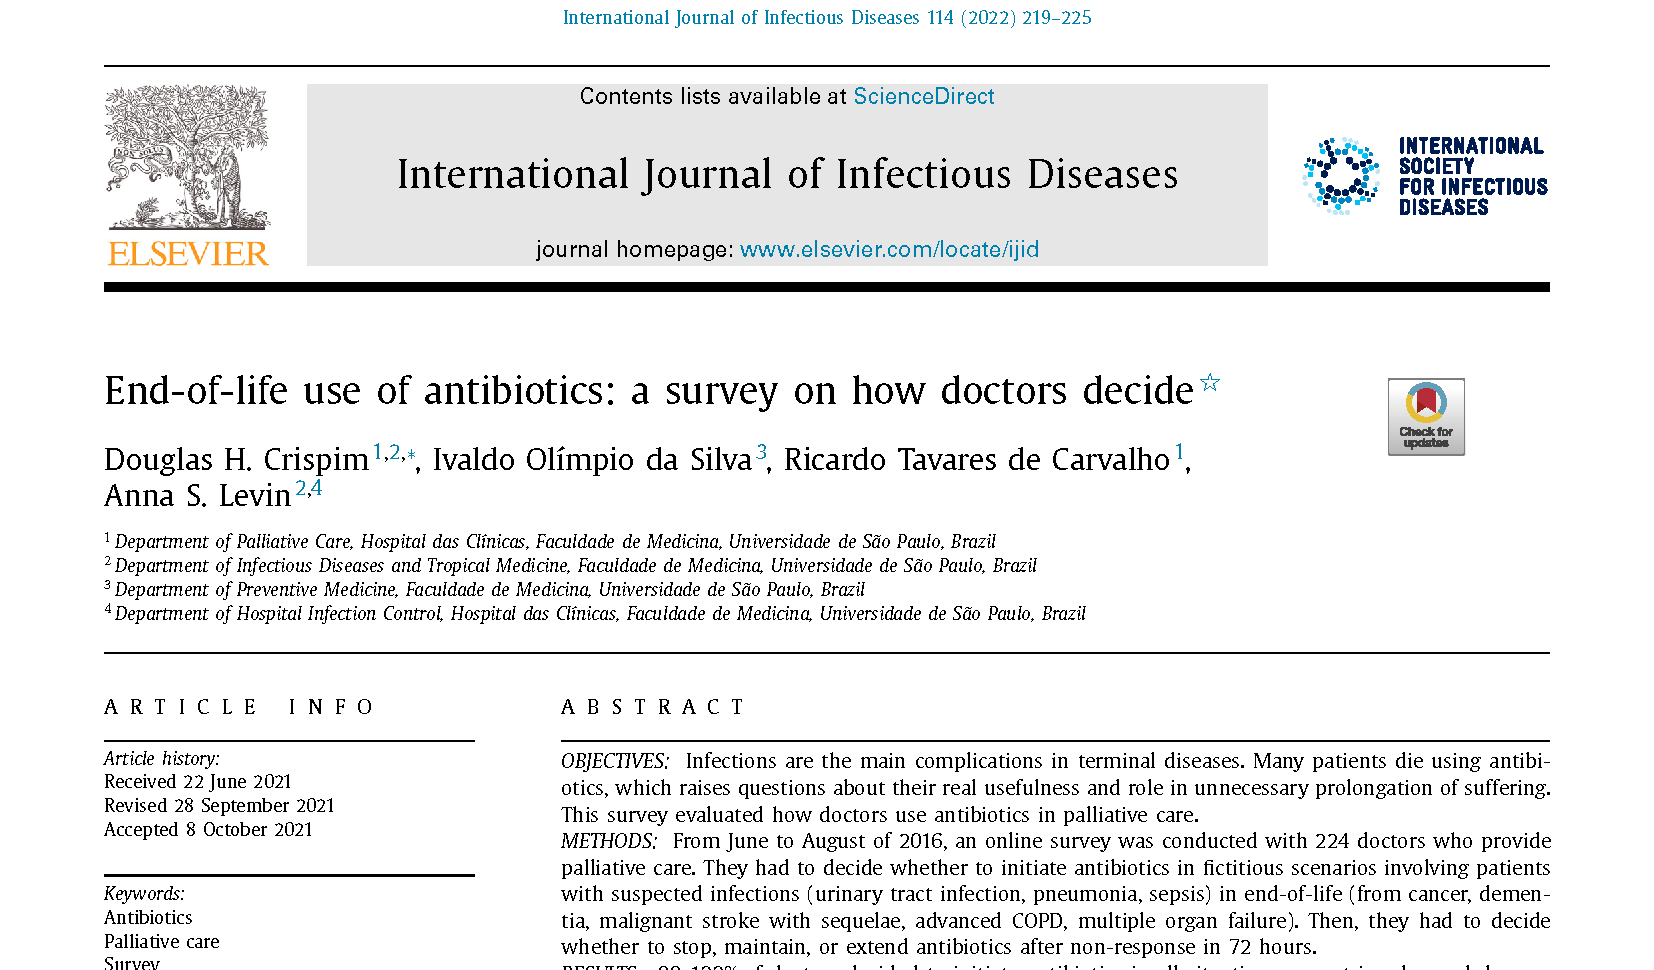 Tese de Doutorado trata sobre decisão de médicos paliativistas sobre o uso de antibióticos em pacientes terminais